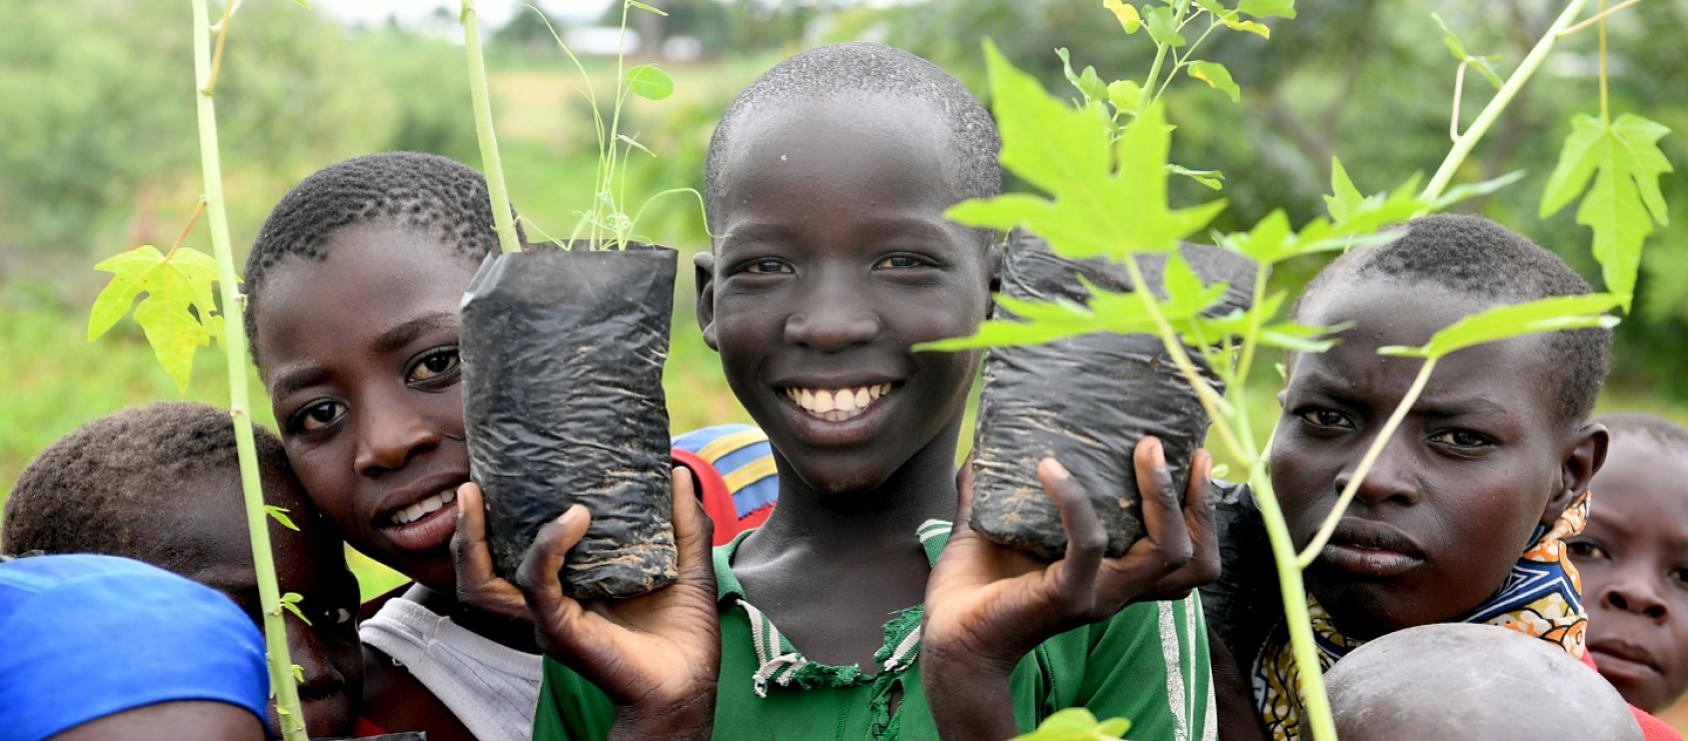 Niños y niñas en un vivero de Camerún sostienen plantas jóvenes y miran a la cámara con una gran sonrisa en sus rostros